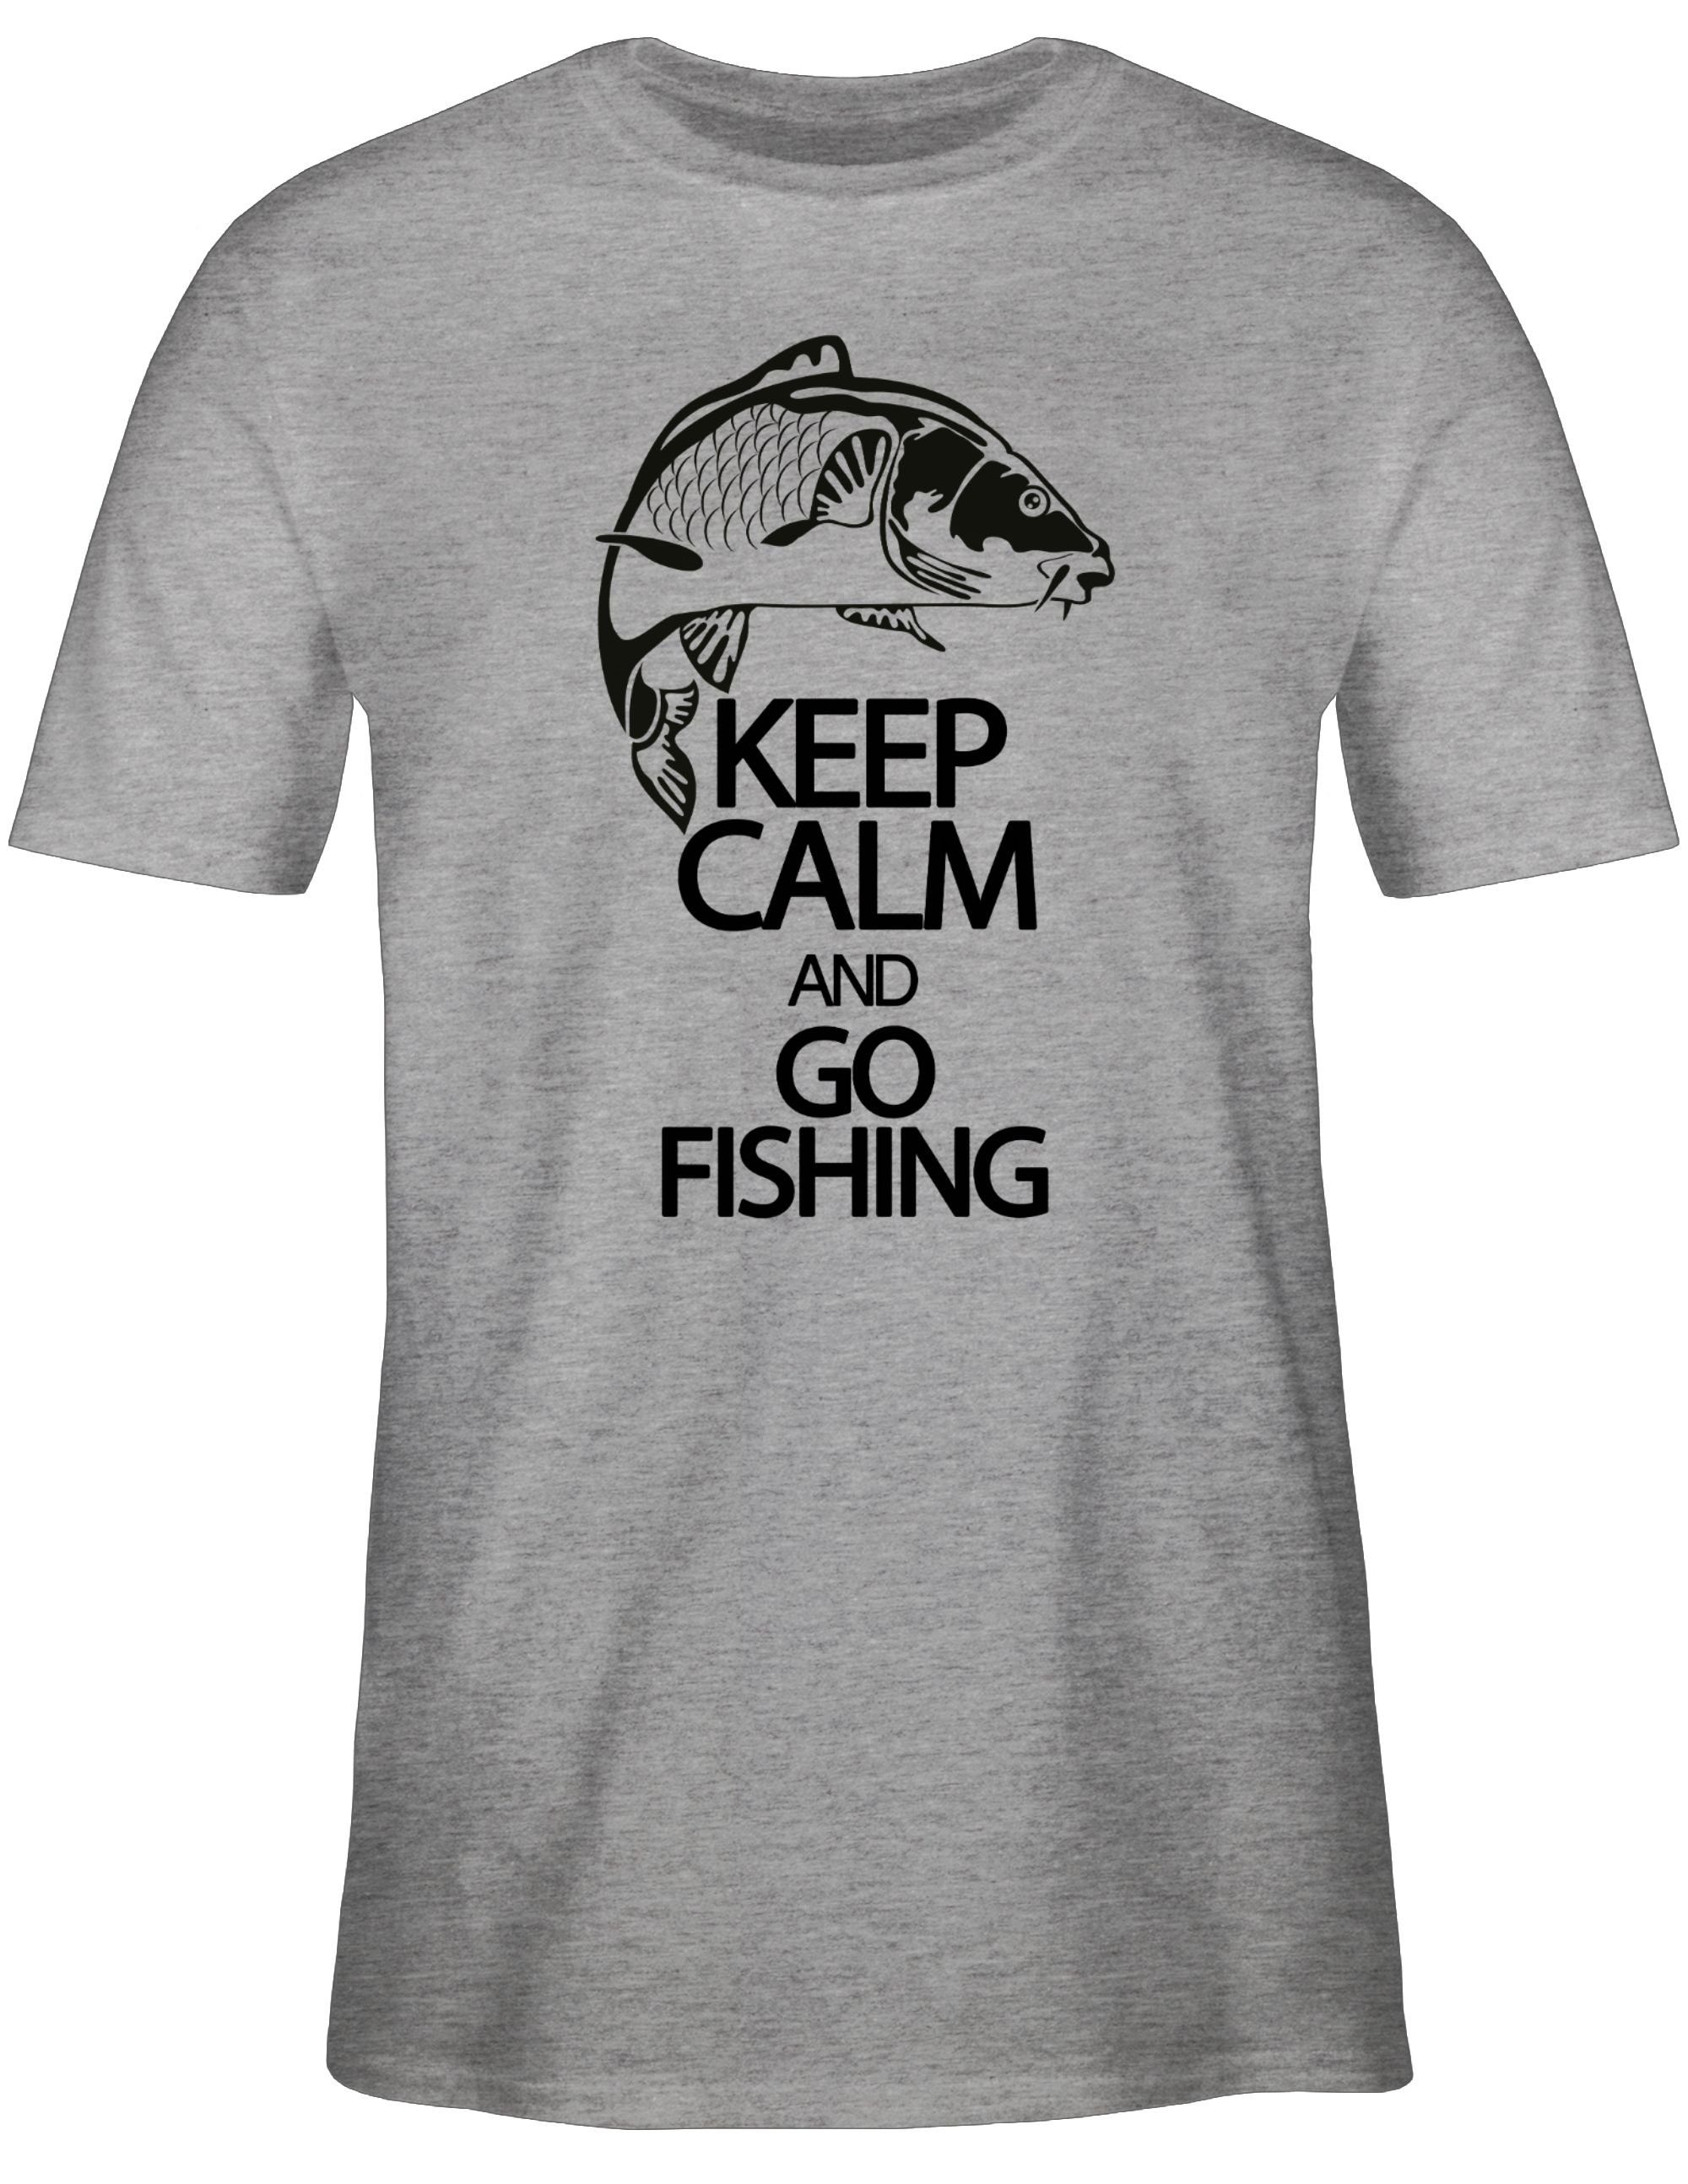 Shirtracer T-Shirt Keep calm Grau meliert Angler Geschenke 3 Fishing go and